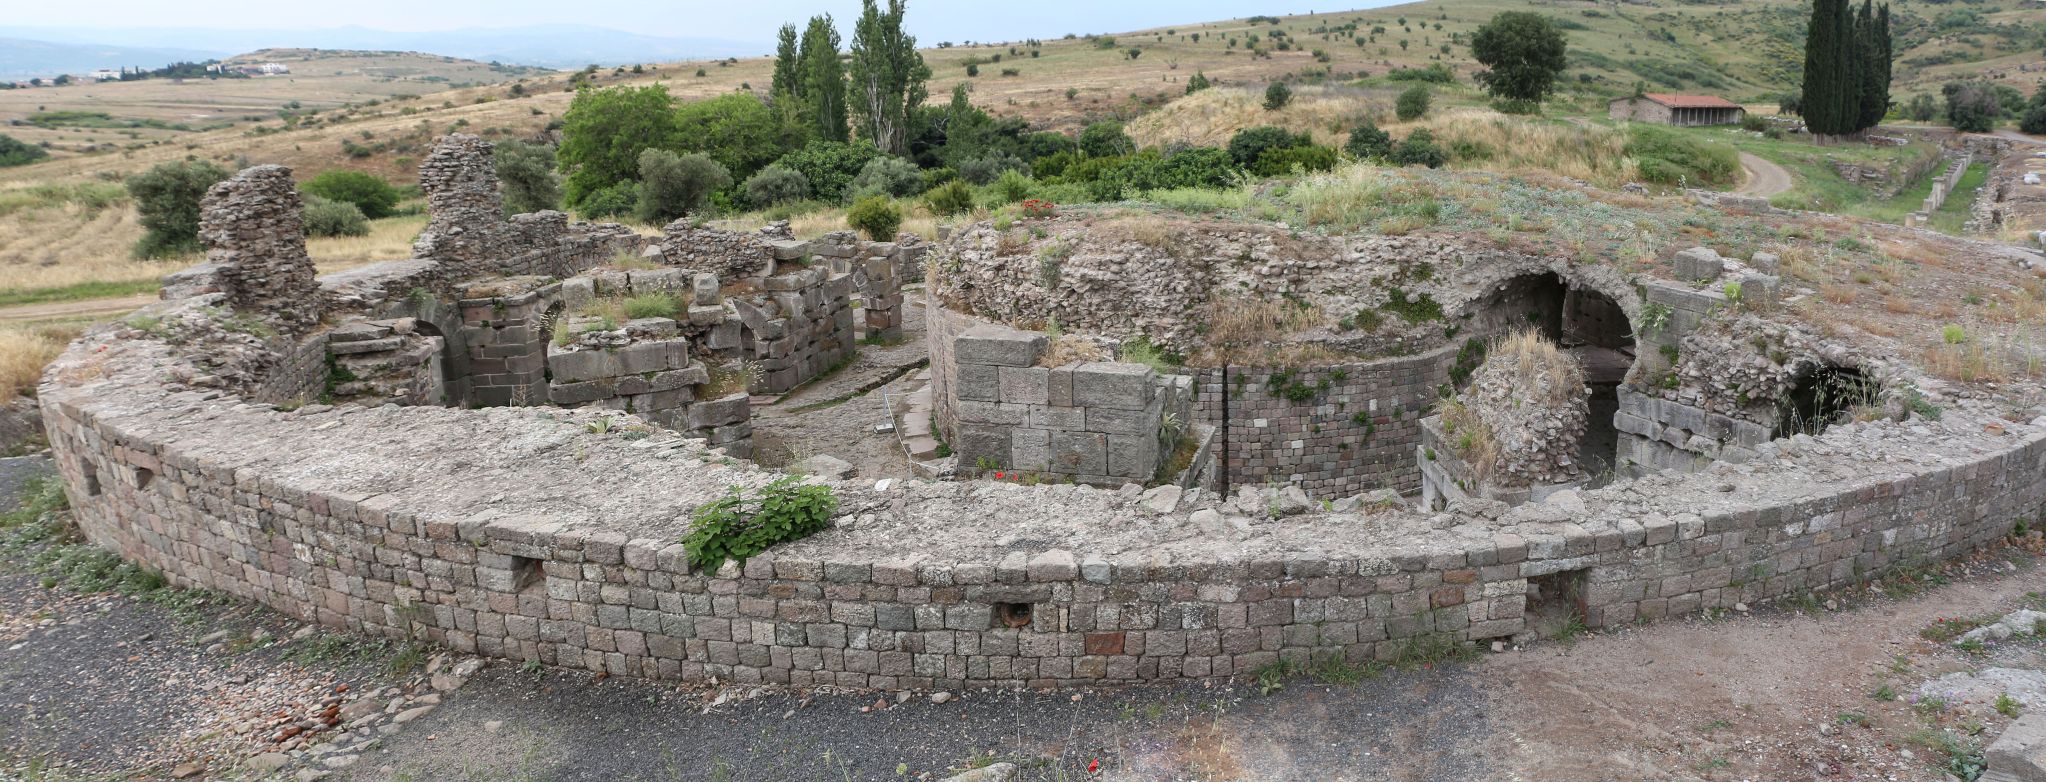 Telesphorus Temple at Ancient city of Pergamum at Bergama in Turkey